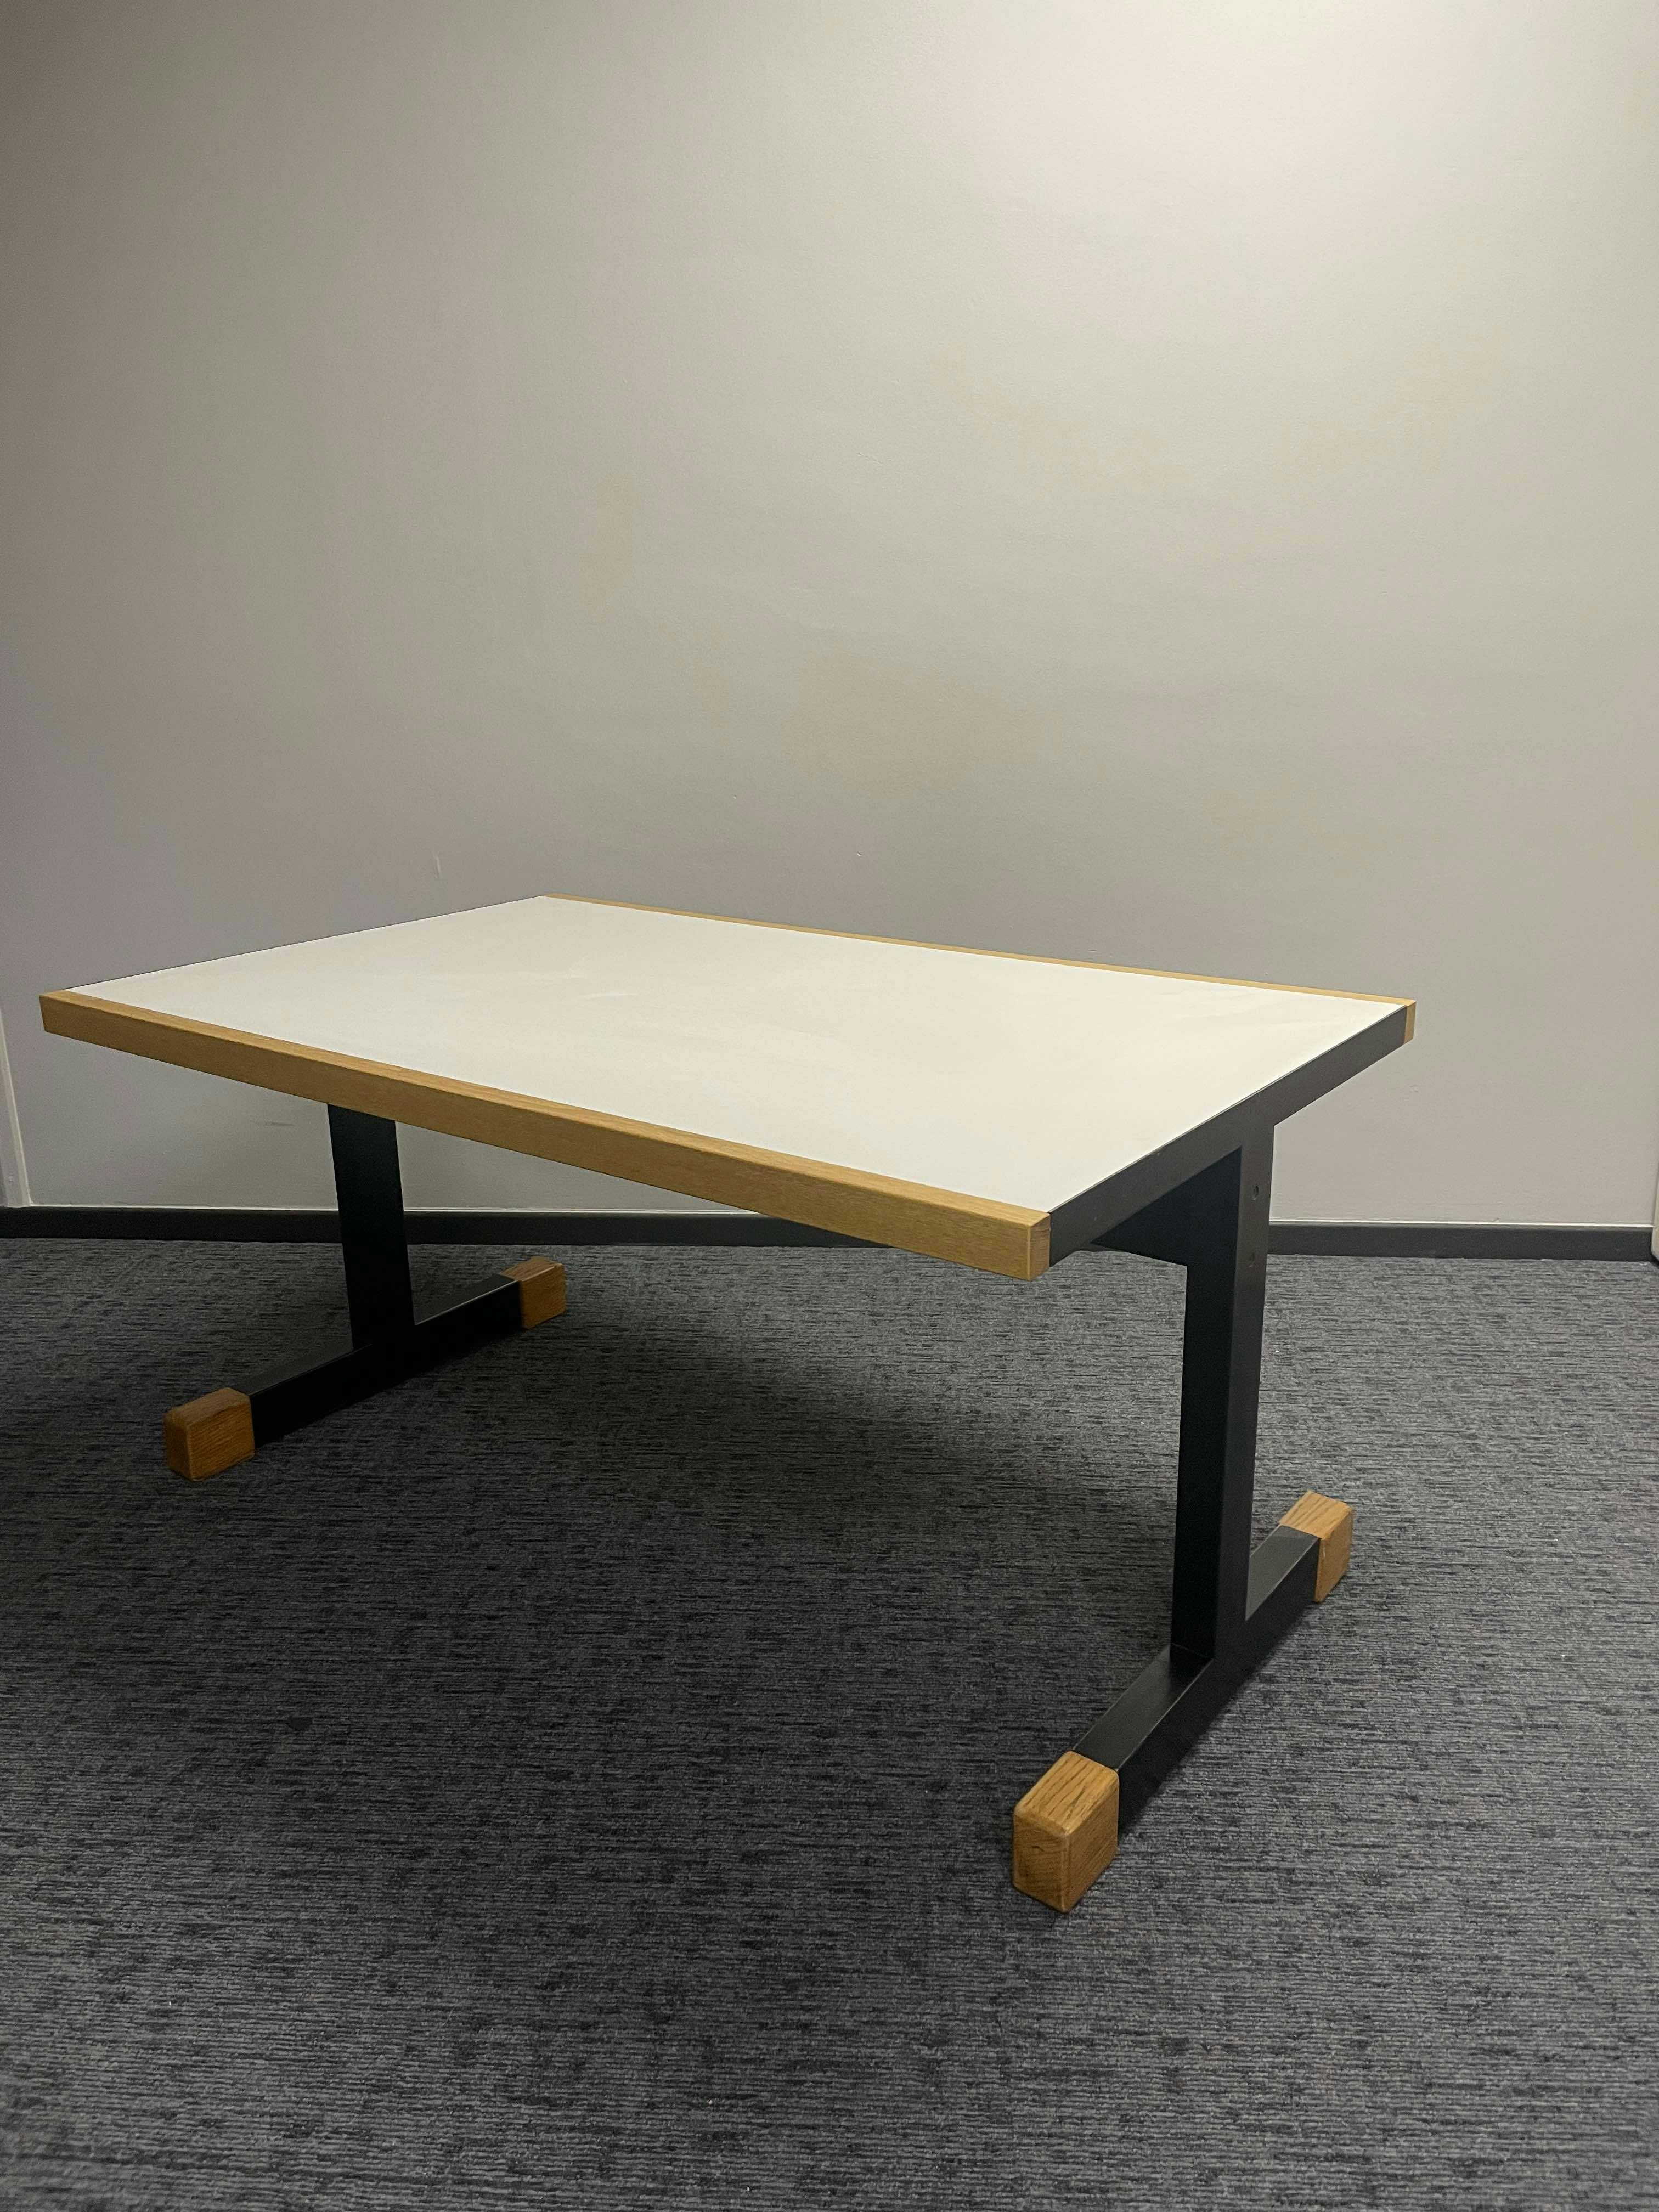 Houten tafel - Tweedehands kwaliteit "Tafels" - Relieve Furniture